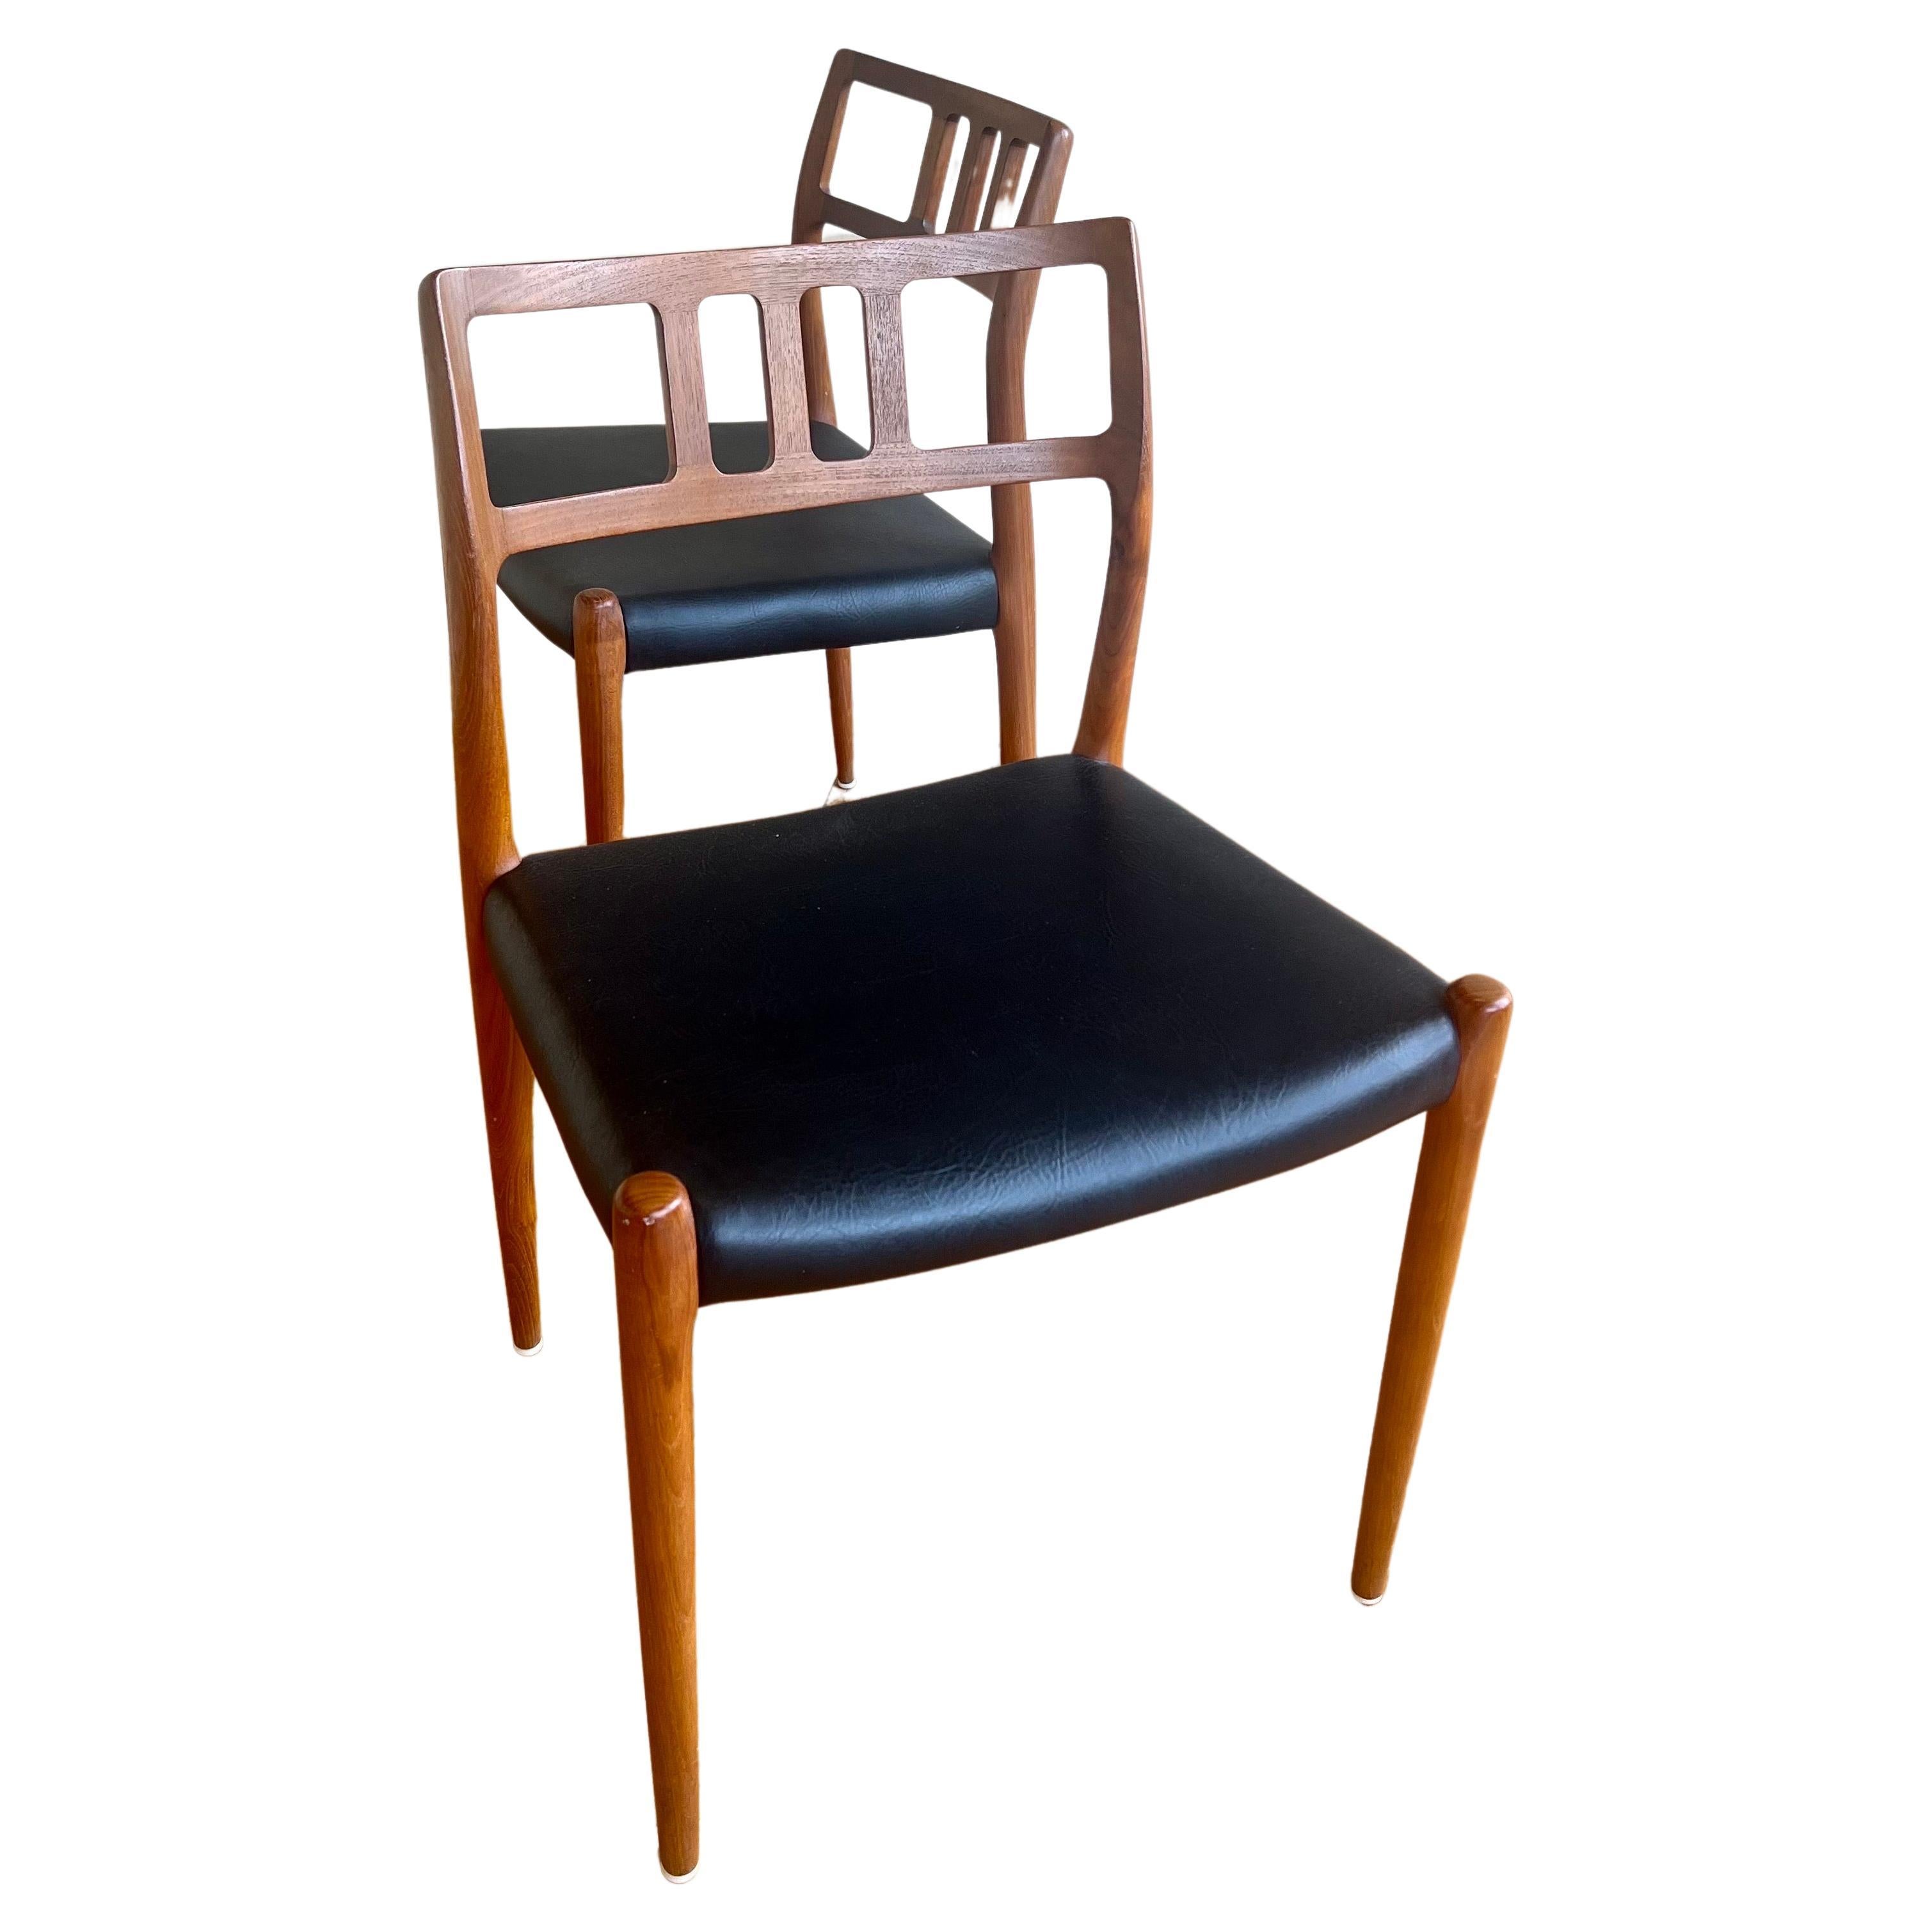 Ein sehr schöner Satz von sechs Teakholz-Esszimmerstühlen, entworfen von Nils Moller, ca. 1960er Jahre. Die Stühle sind aus massivem Teakholz gefertigt und mit schwarzem Naugahyde gepolstert. Das Set ist in sehr gutem Zustand. solide und stabil, nur